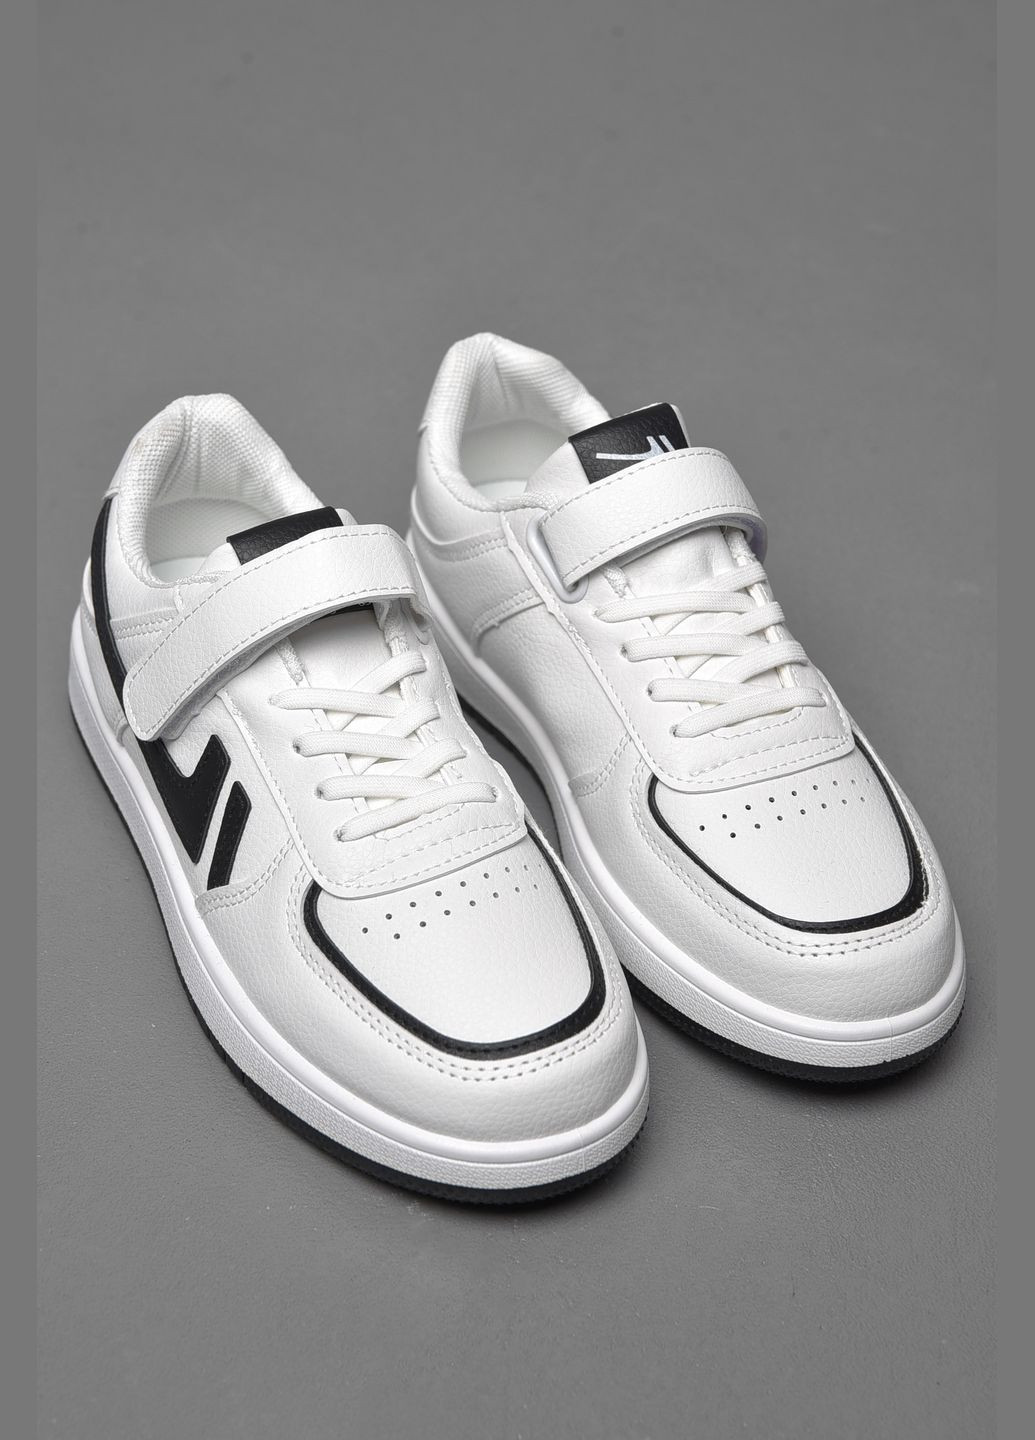 Белые демисезонные кроссовки детские белого цвета на липучках Let's Shop